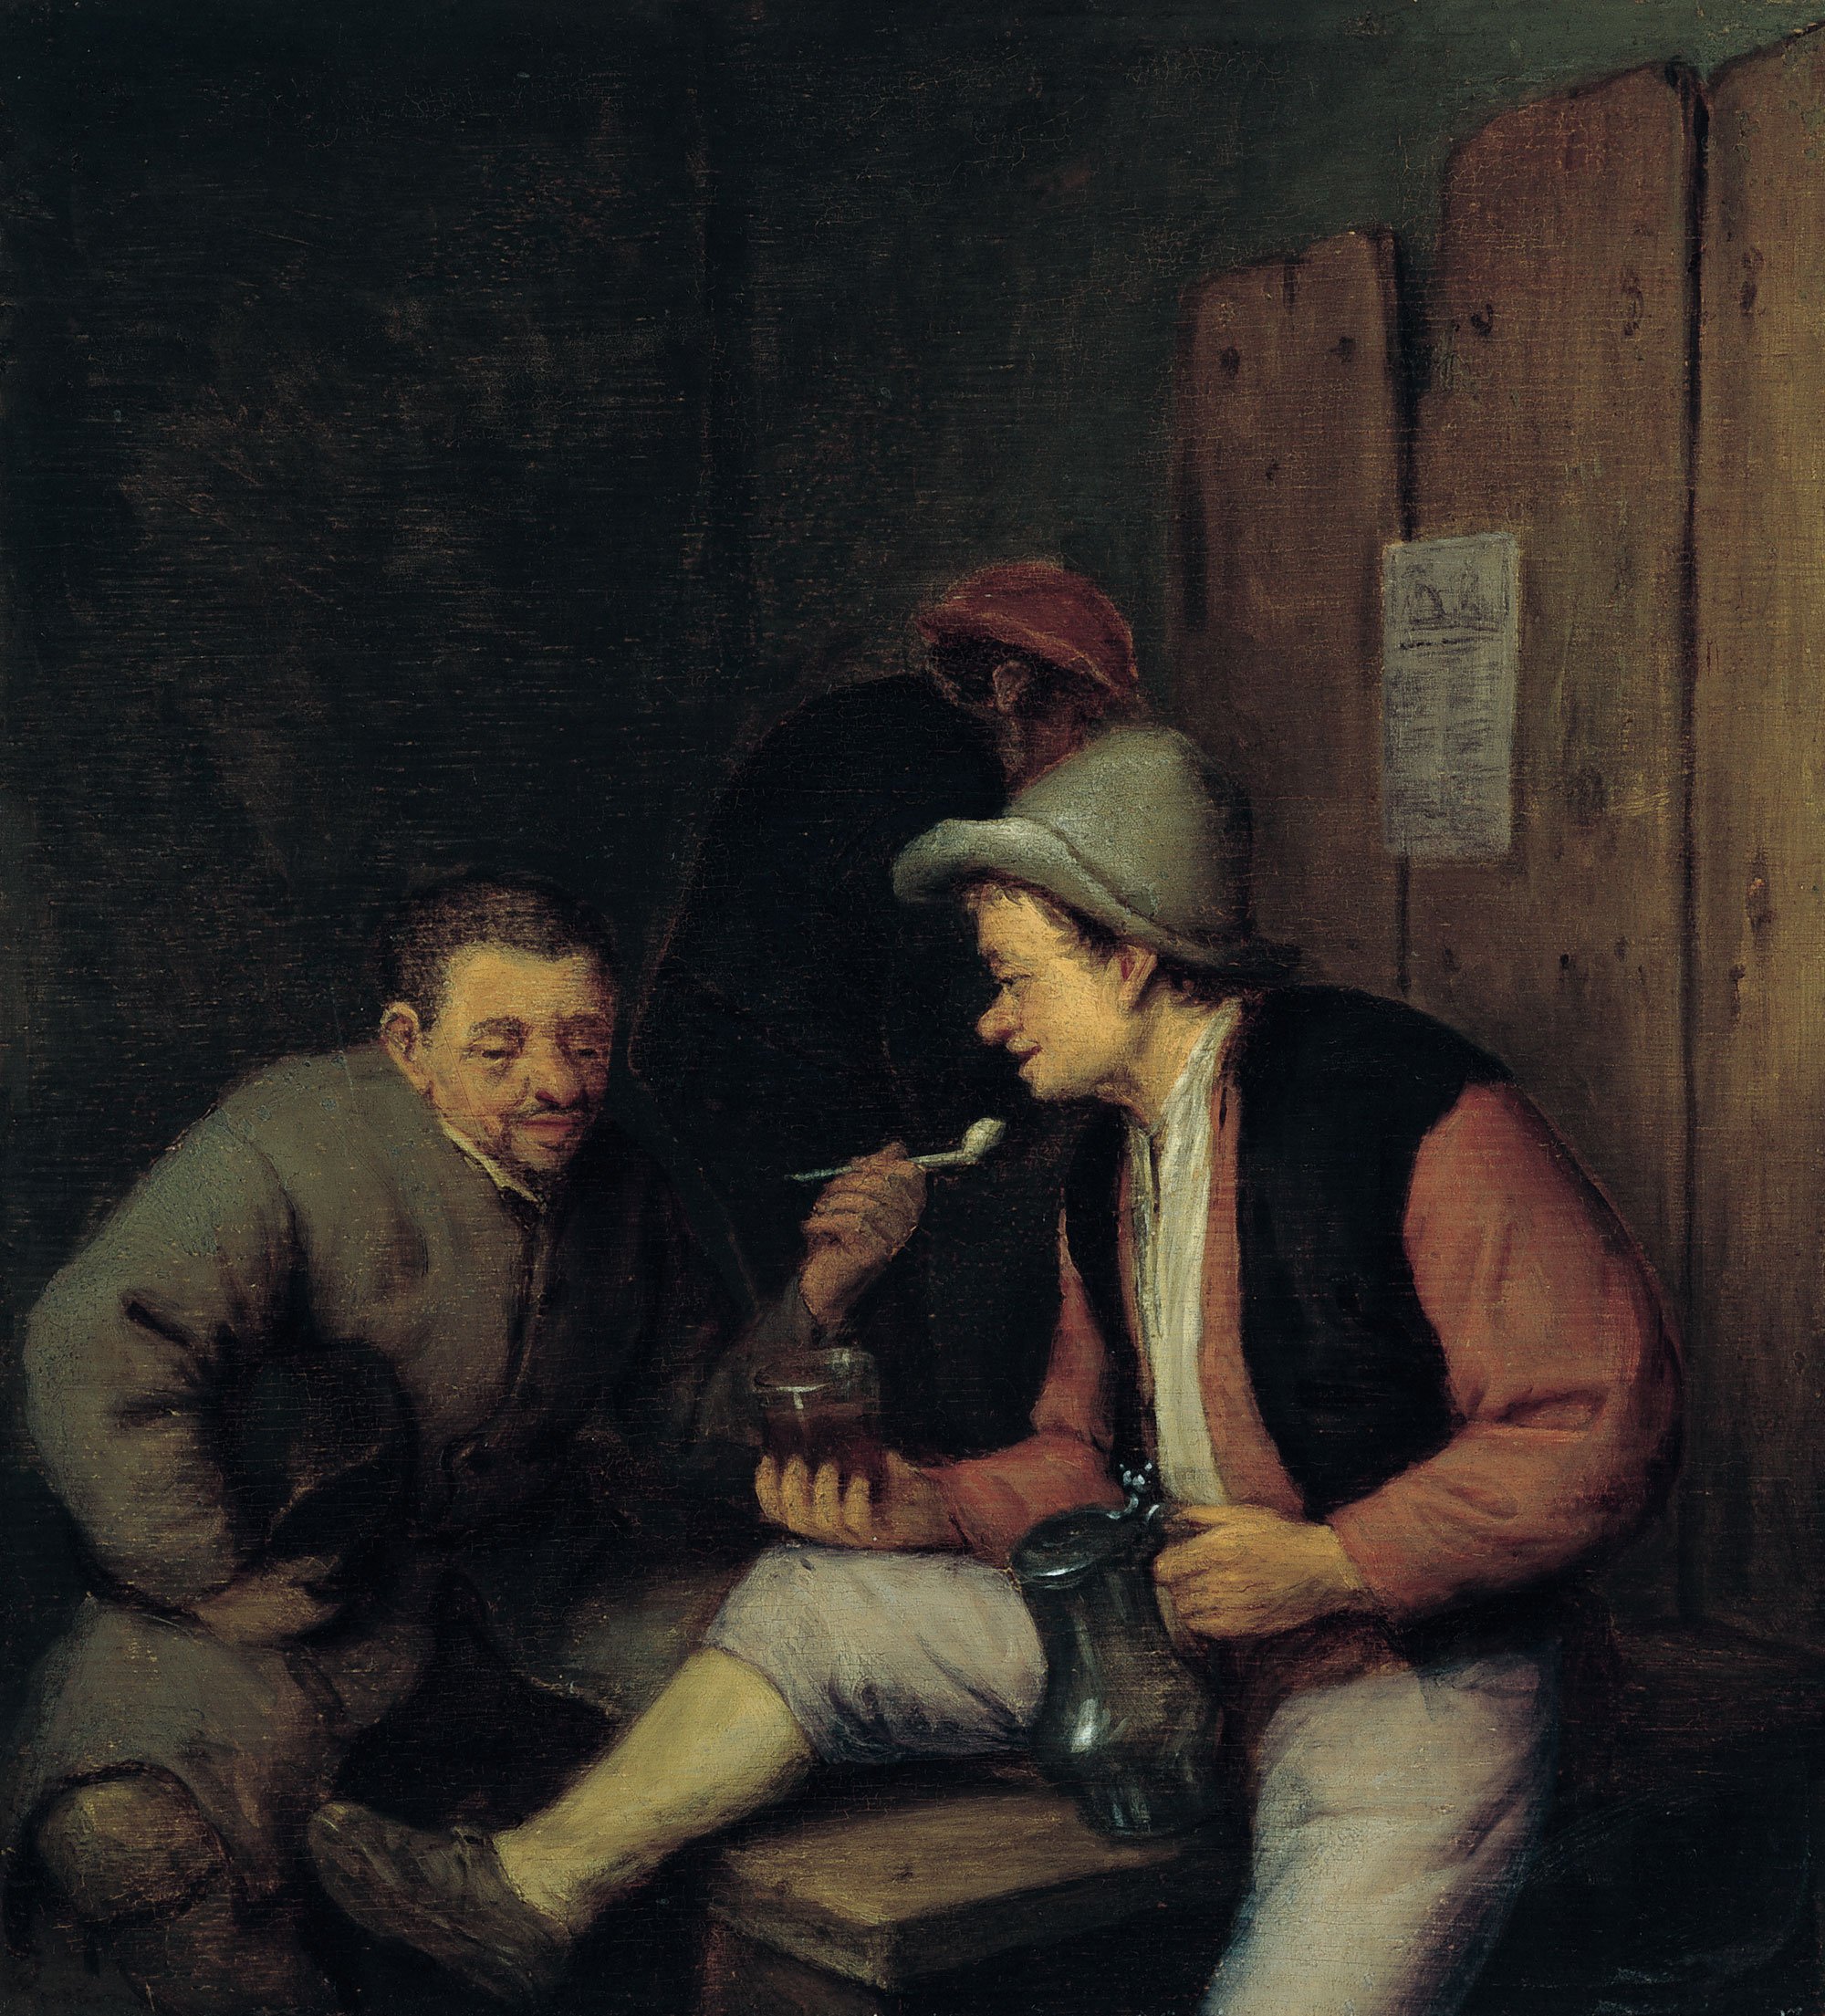 Adriaen van Ostade. Campesinos bebiendo y fumando en una taberna